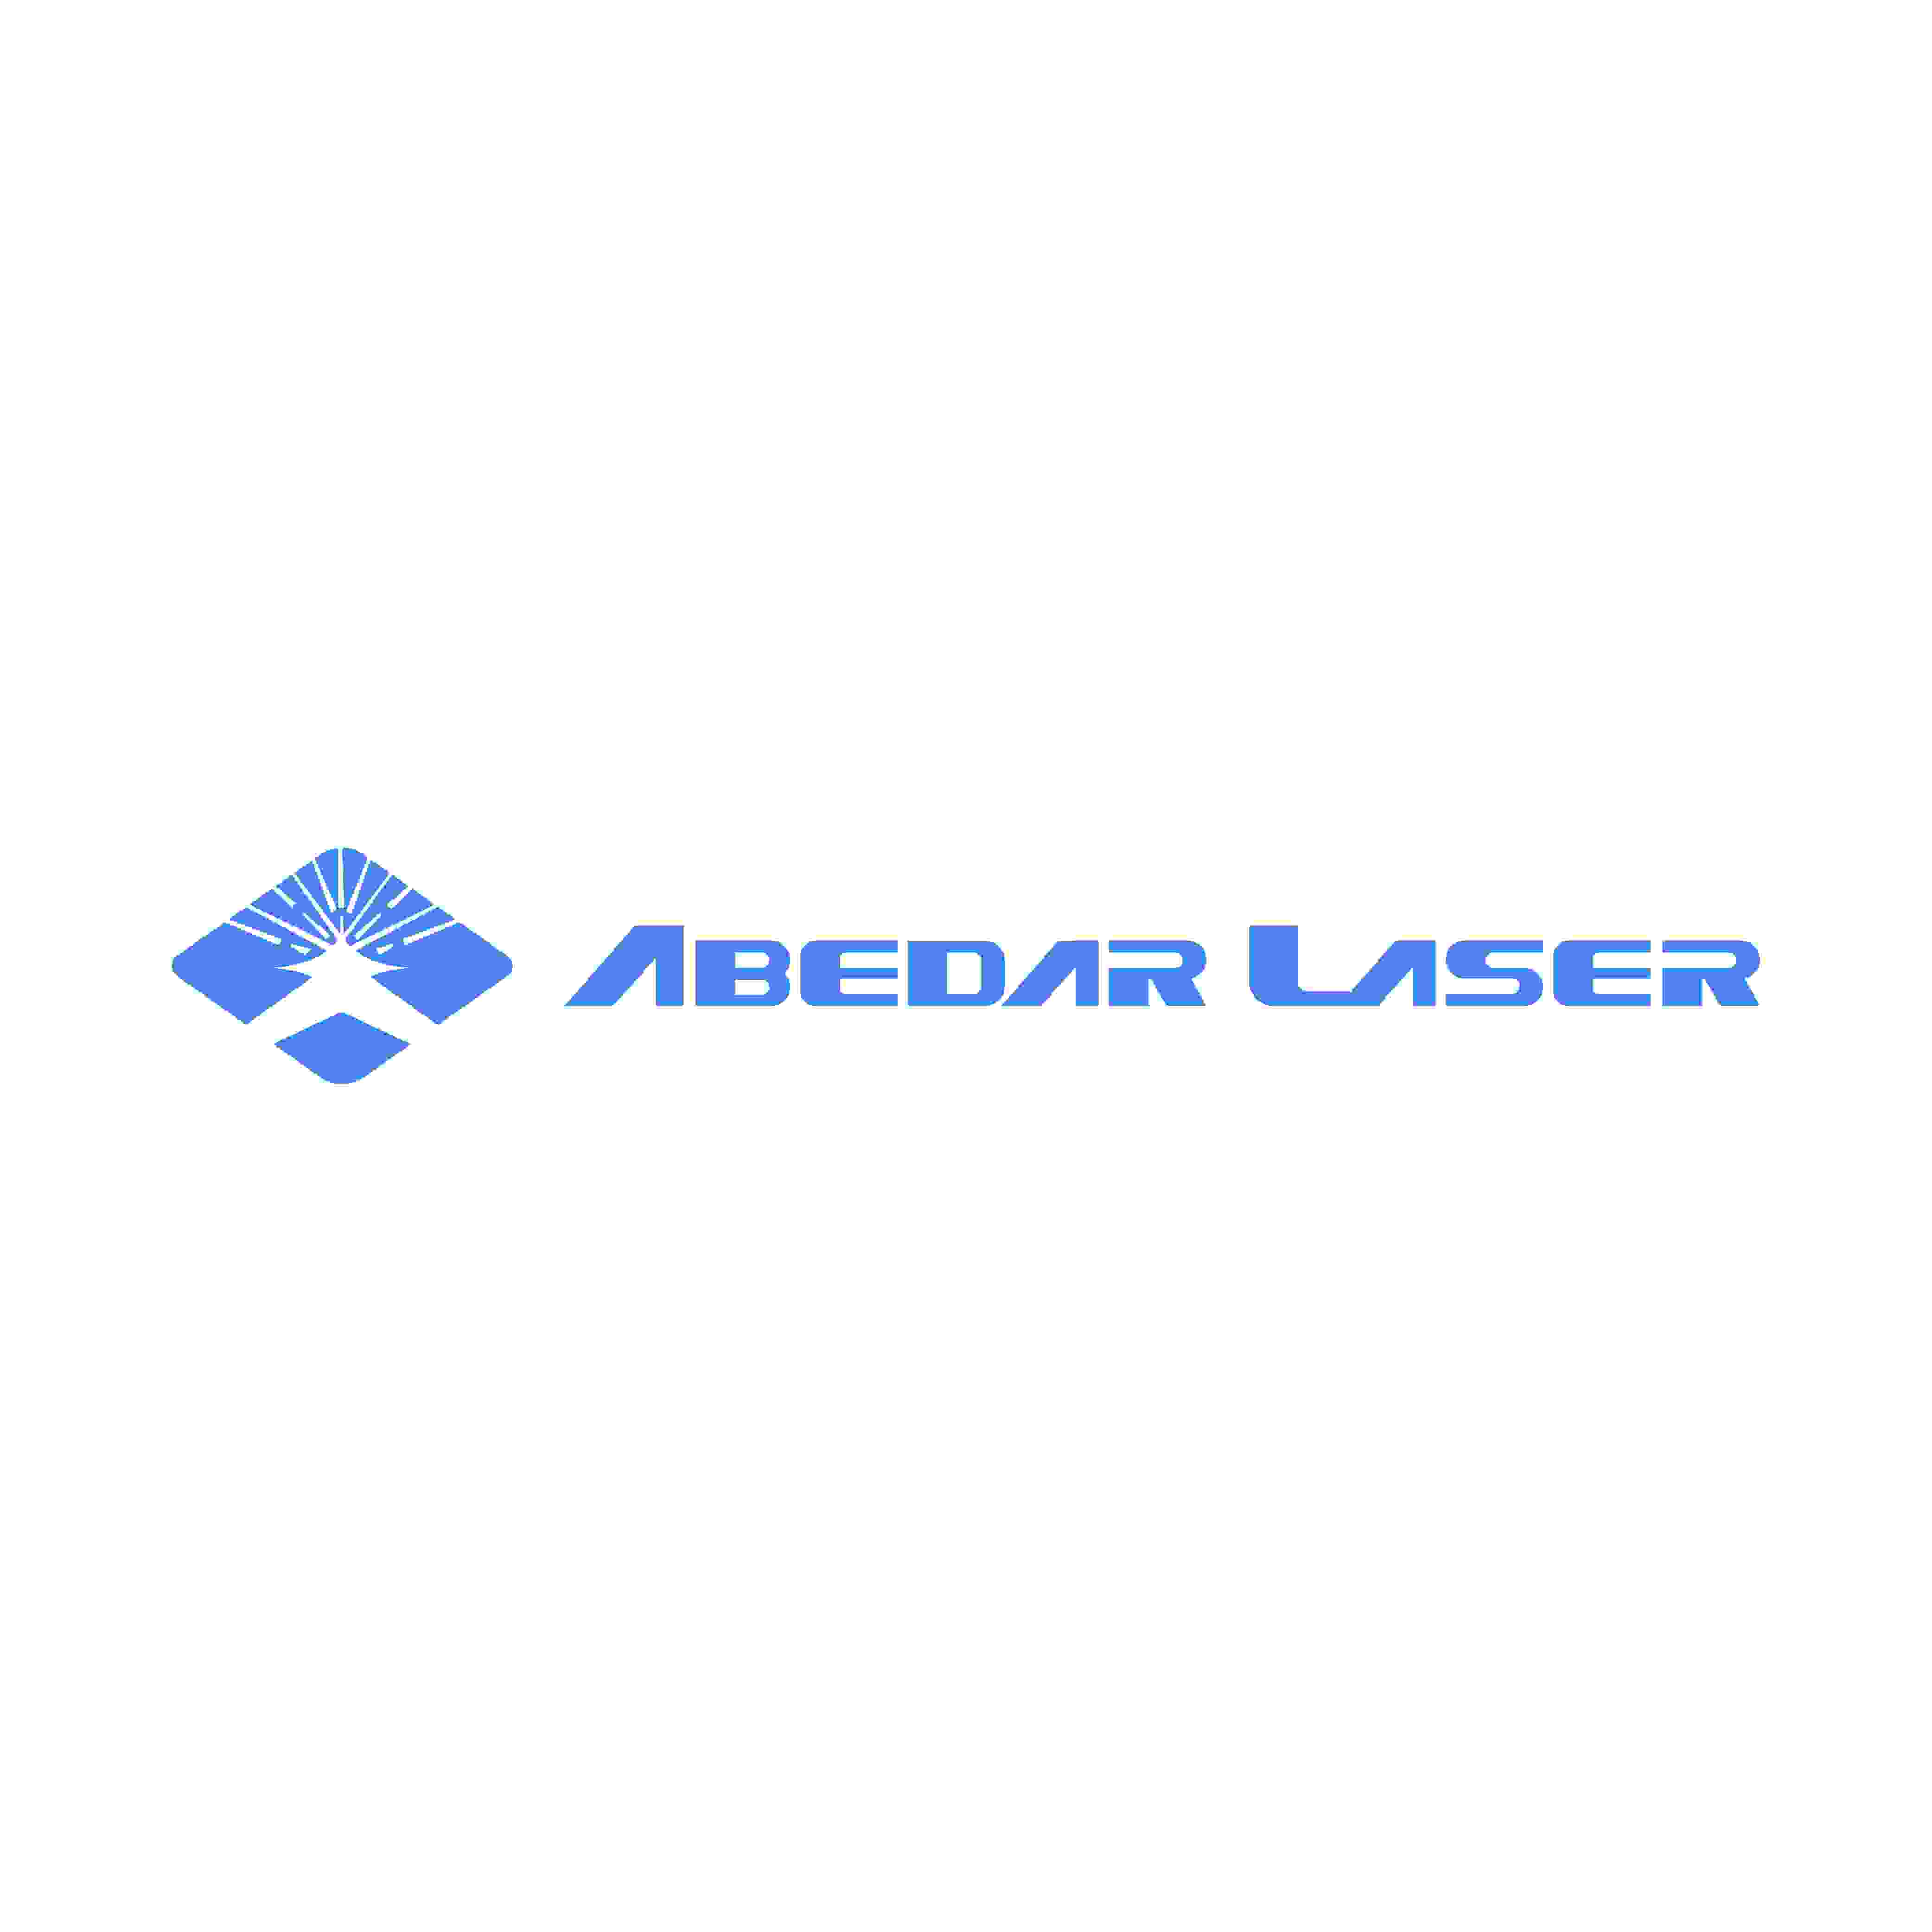 Abedar Laser (Wuhan) Co., Ltd